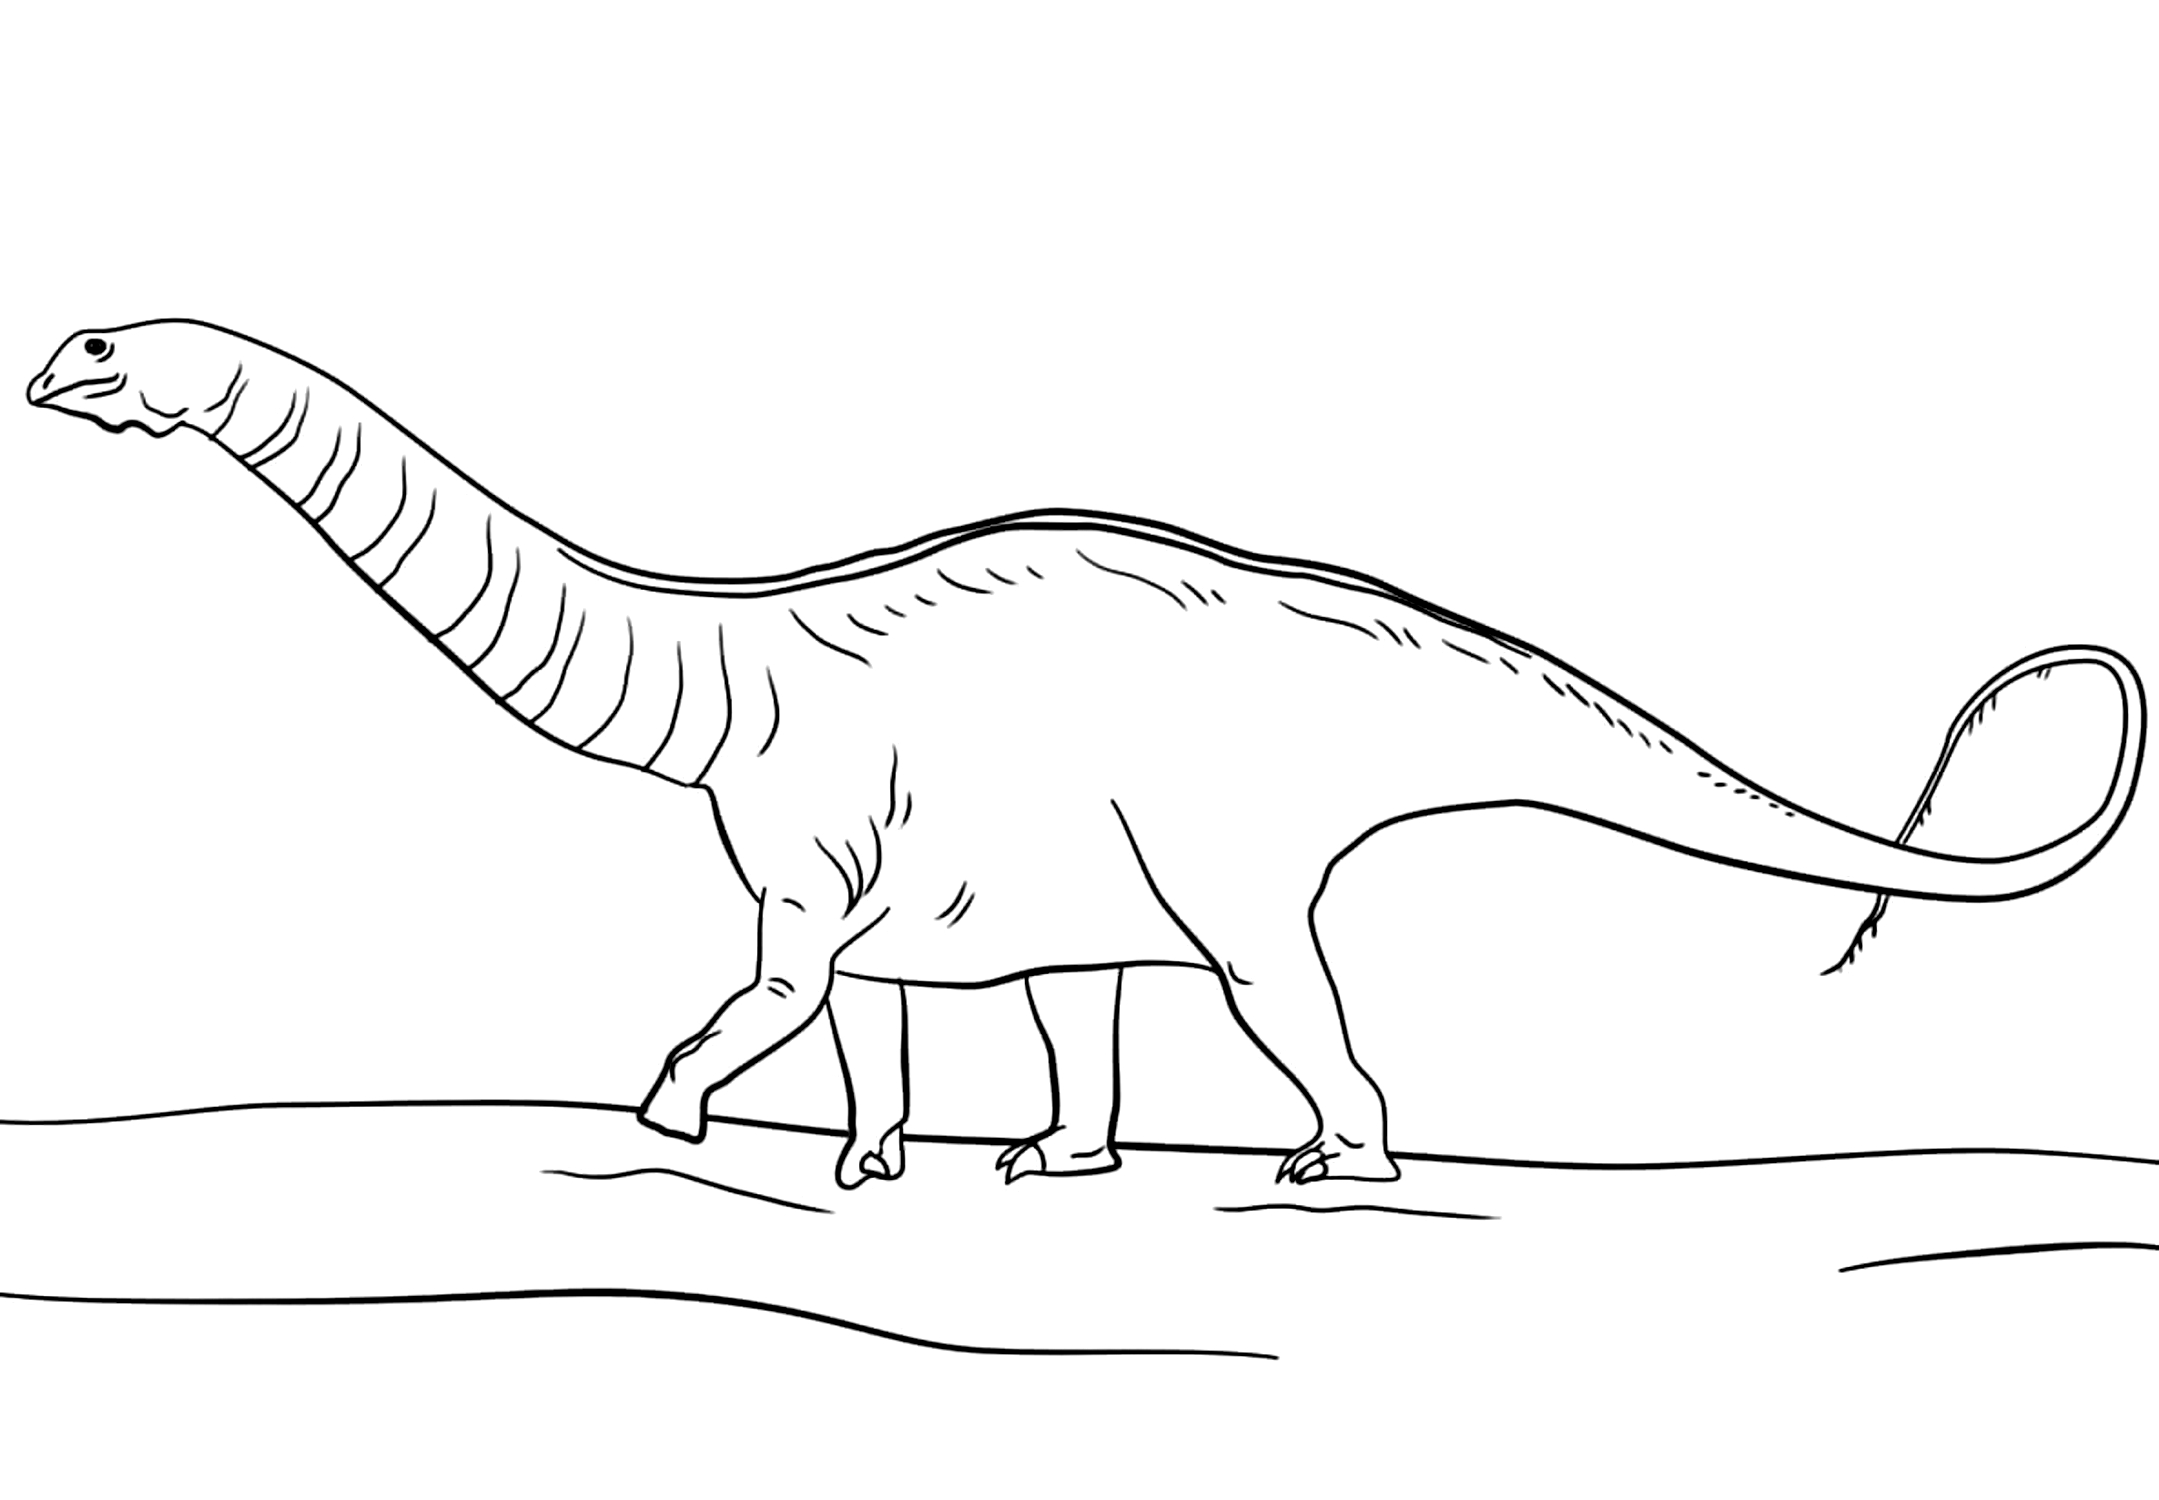 Dibujo 10 de Jurassic World para imprimir y colorear